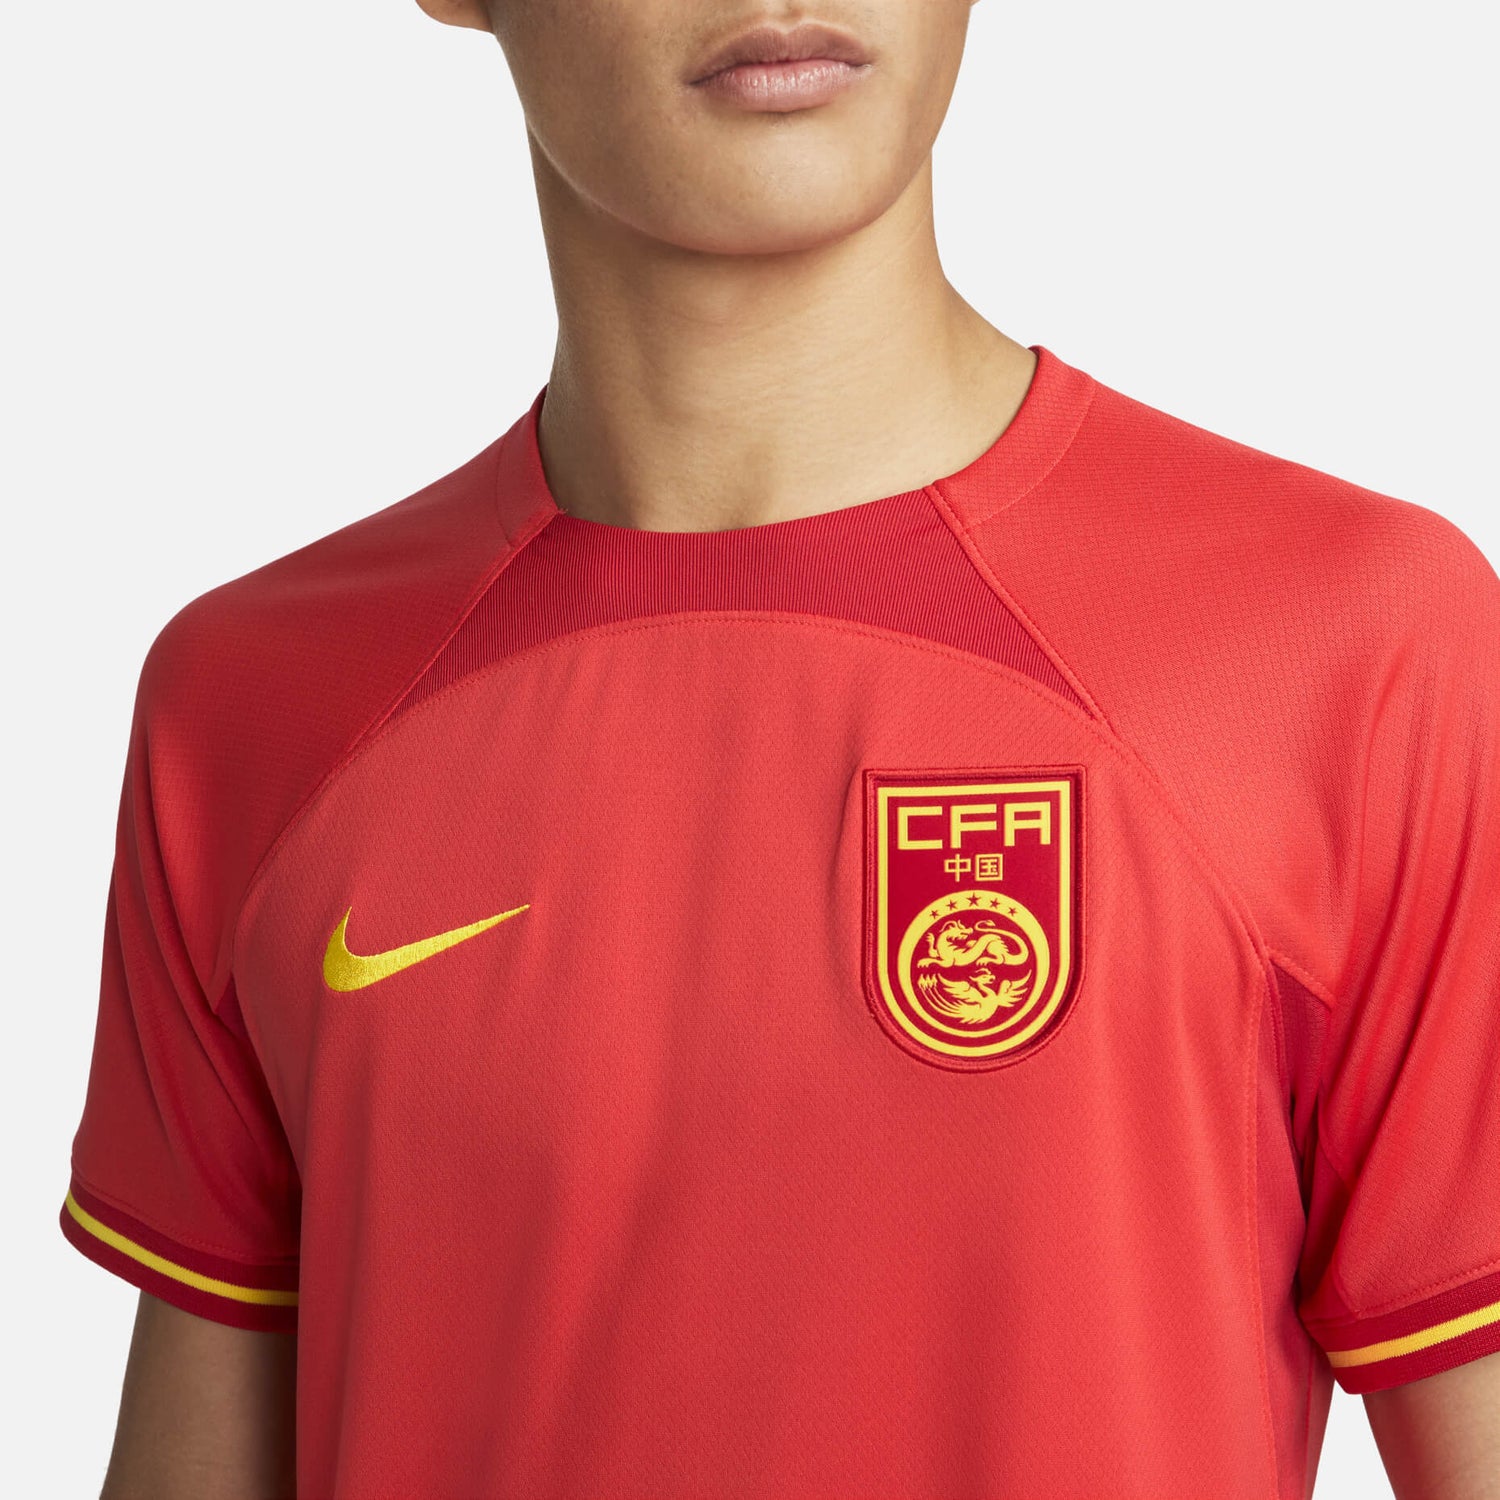 Jersey Football Shirt Goalkeeper Jersey Soccer Jerseys - China New